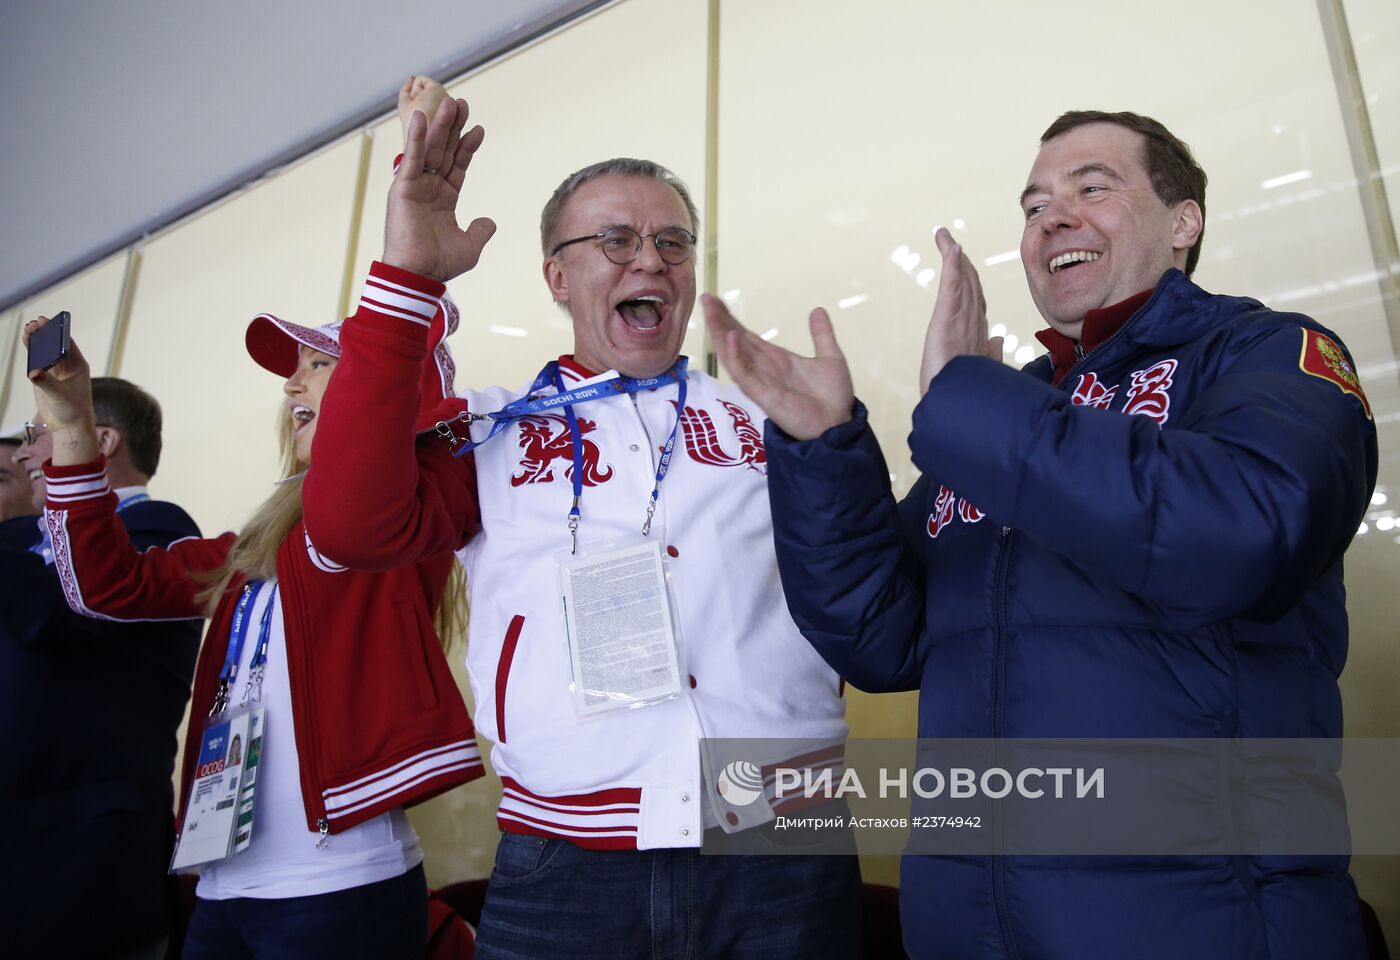 Д.Медведев посетил матч между сборными России и США по хоккею в Сочи